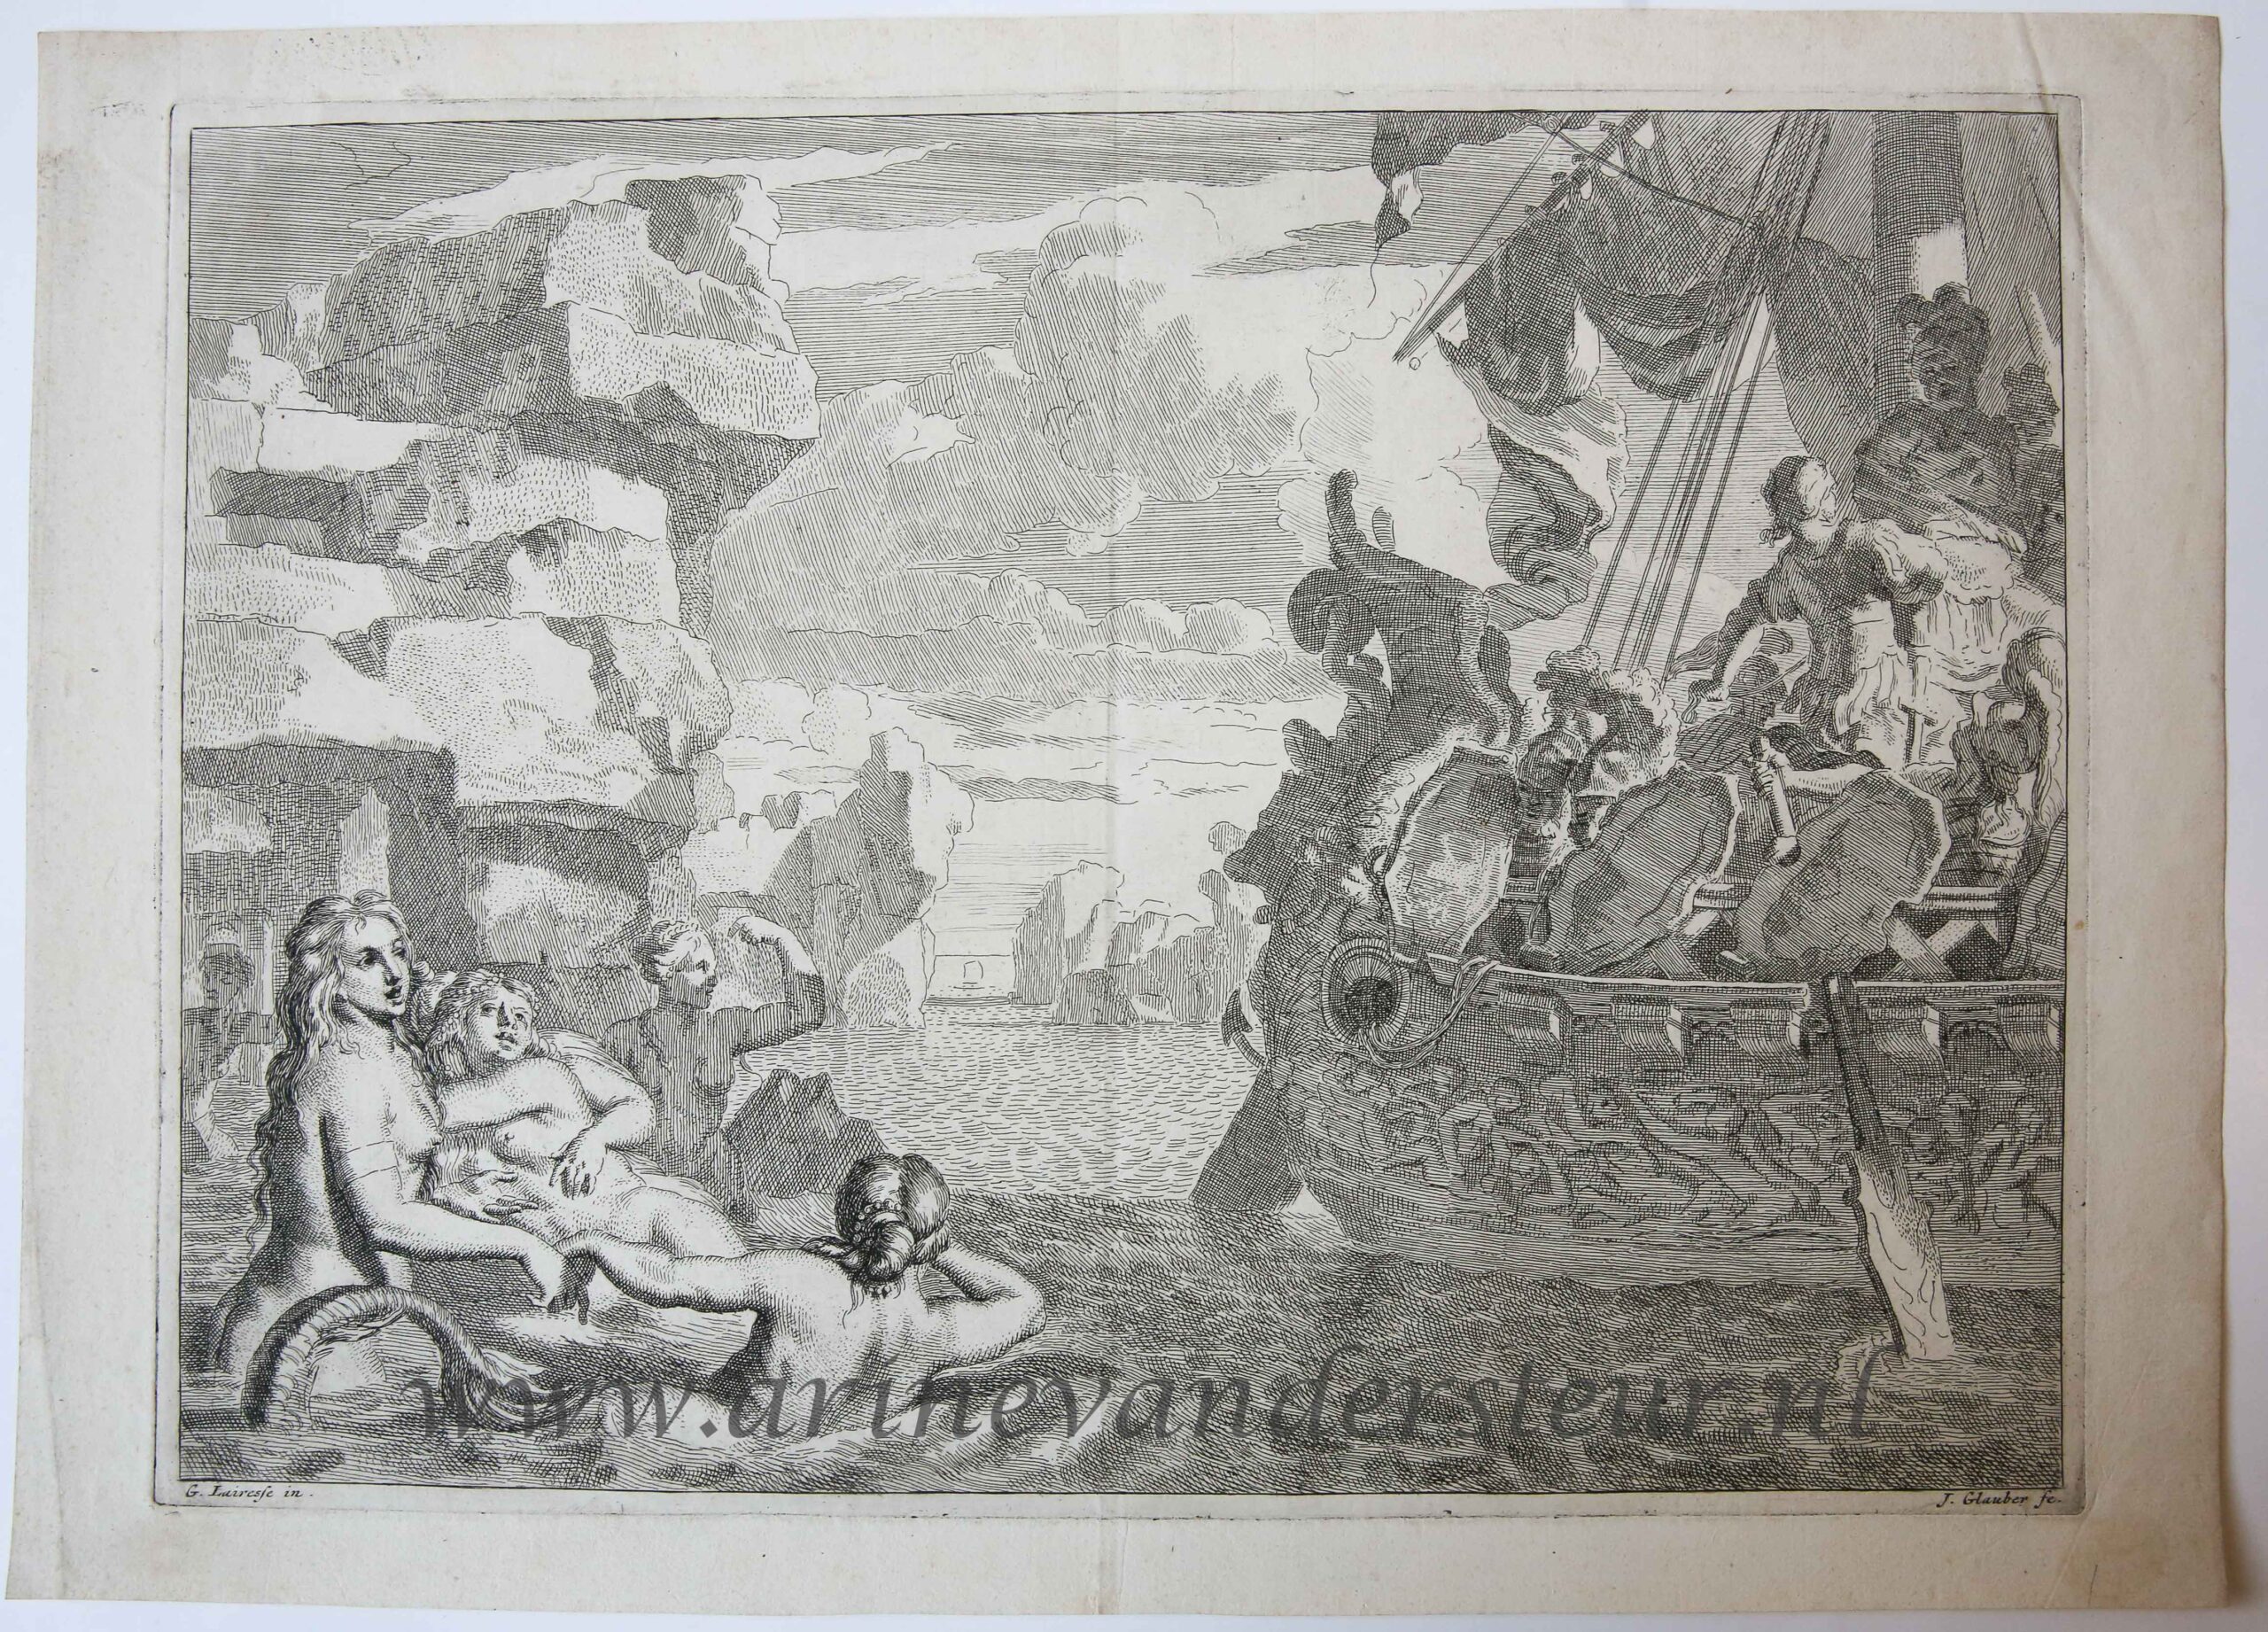 [Antique print, etching/ets] Odysseus and the mermaids/sirens (Odysseus en de sirenen), published 1650-1750.